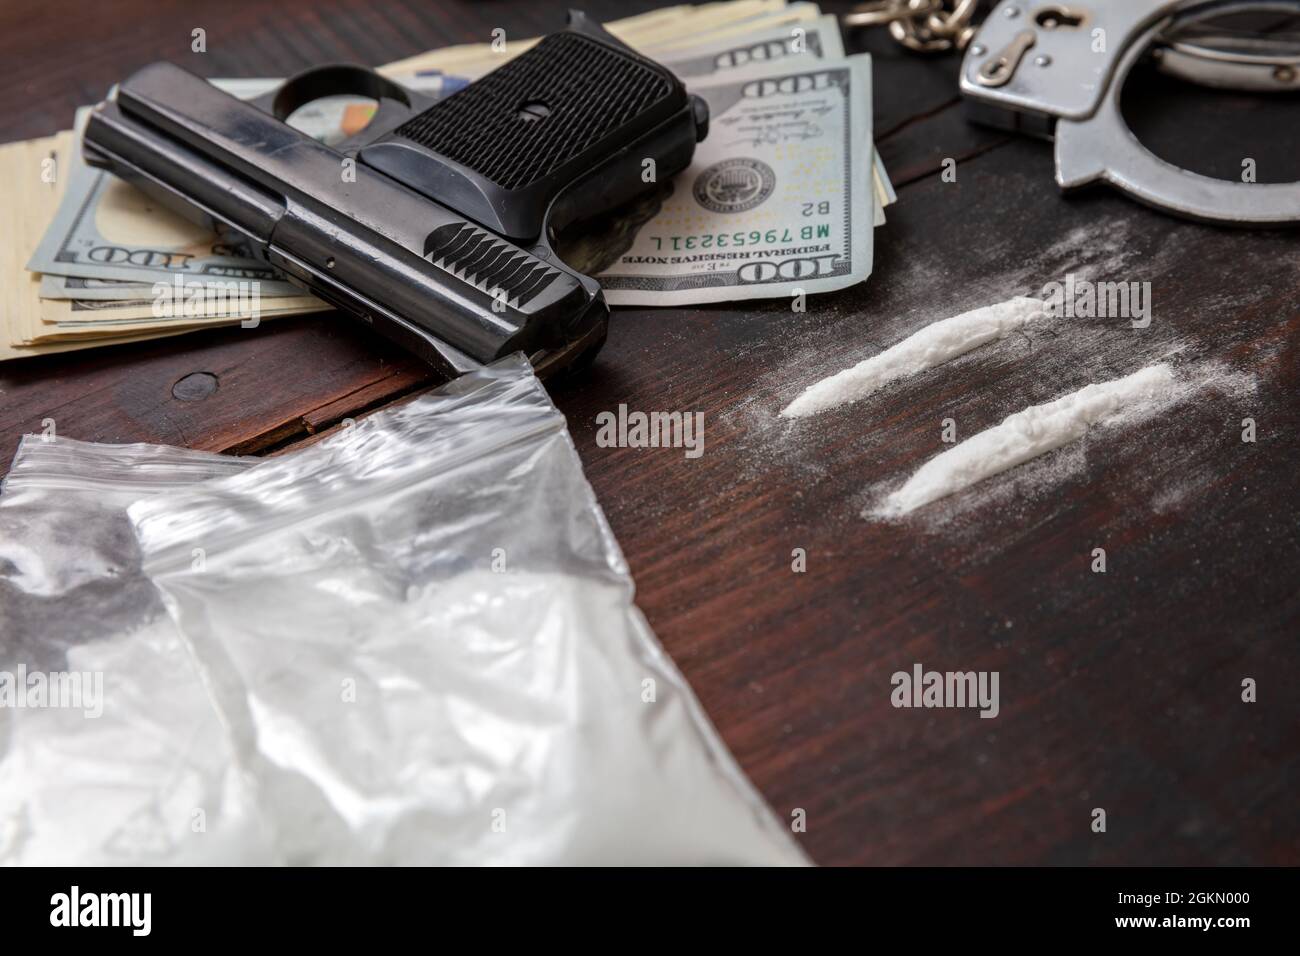 Drogenschmuggel und -Handel, Handschellen, Pistolengeld und Kokainpakete auf Holztischhintergrund. Handel mit illegalen Substanzen und Verhaftung Stockfoto